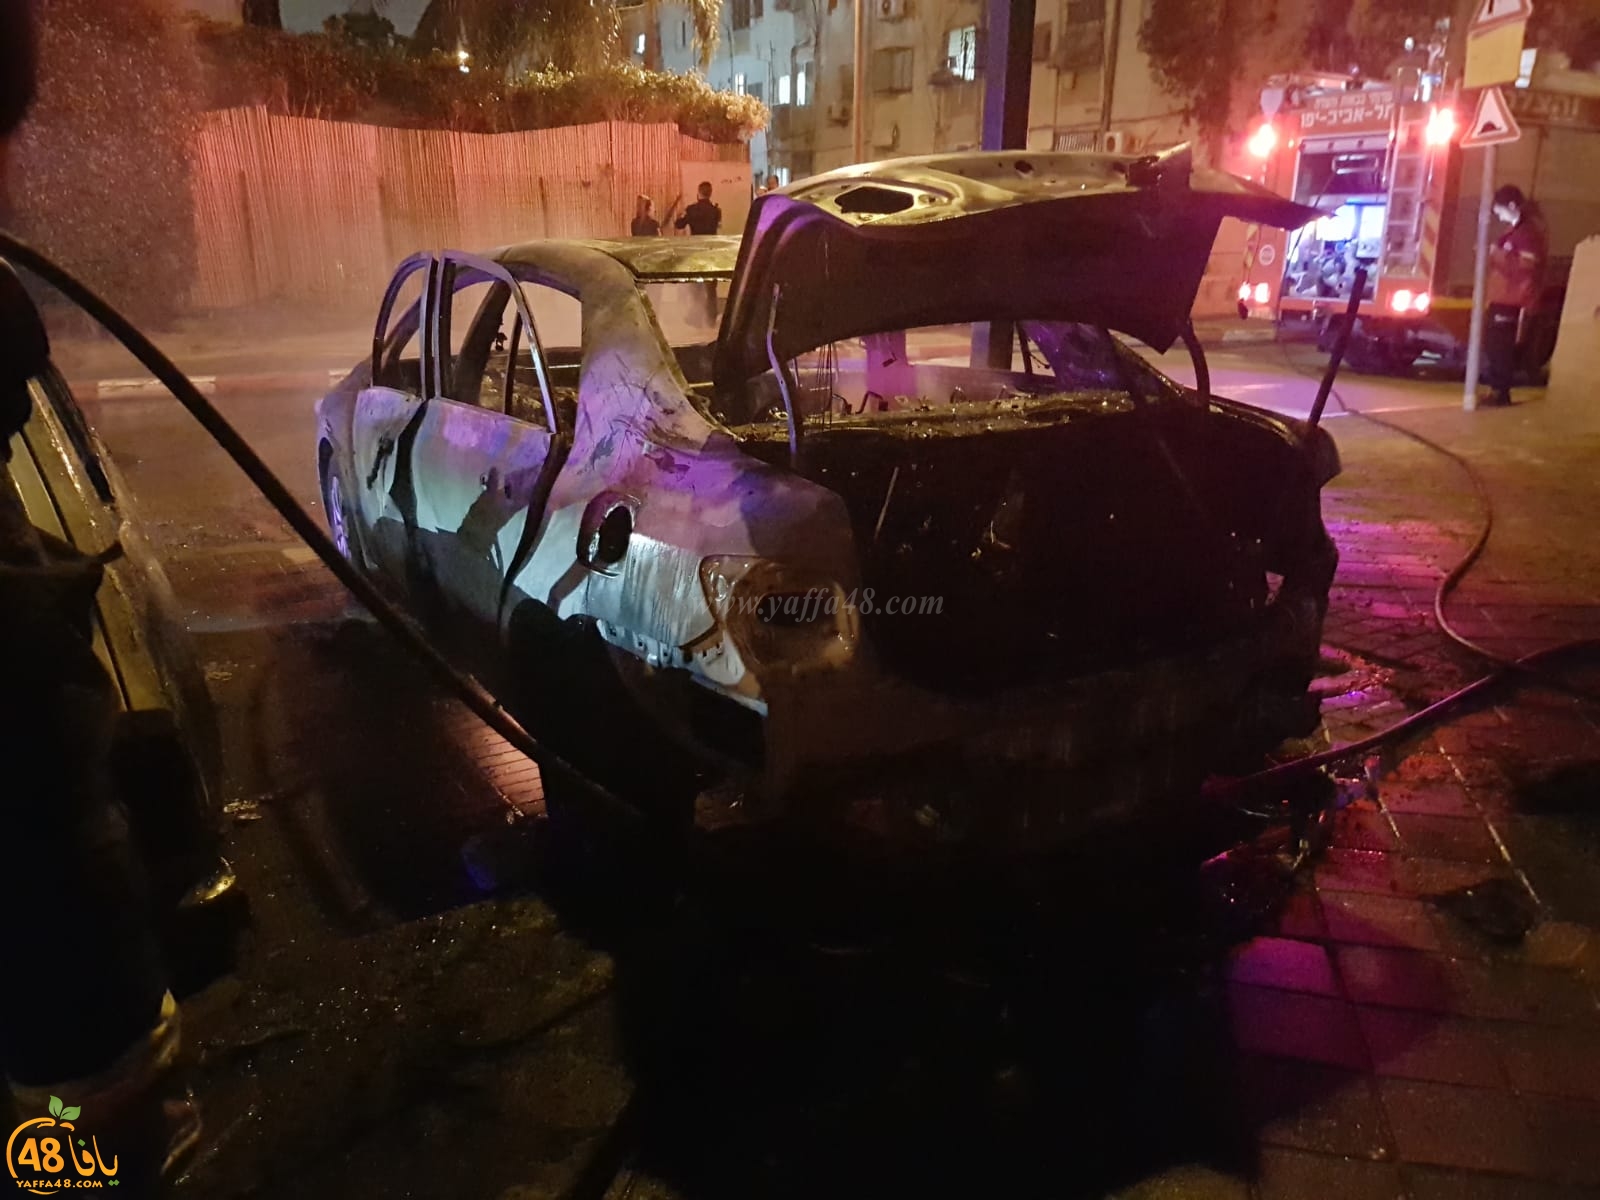  بالصور: حريق سيارة في مدينة يافا والاطفائية تهرع للمكان 